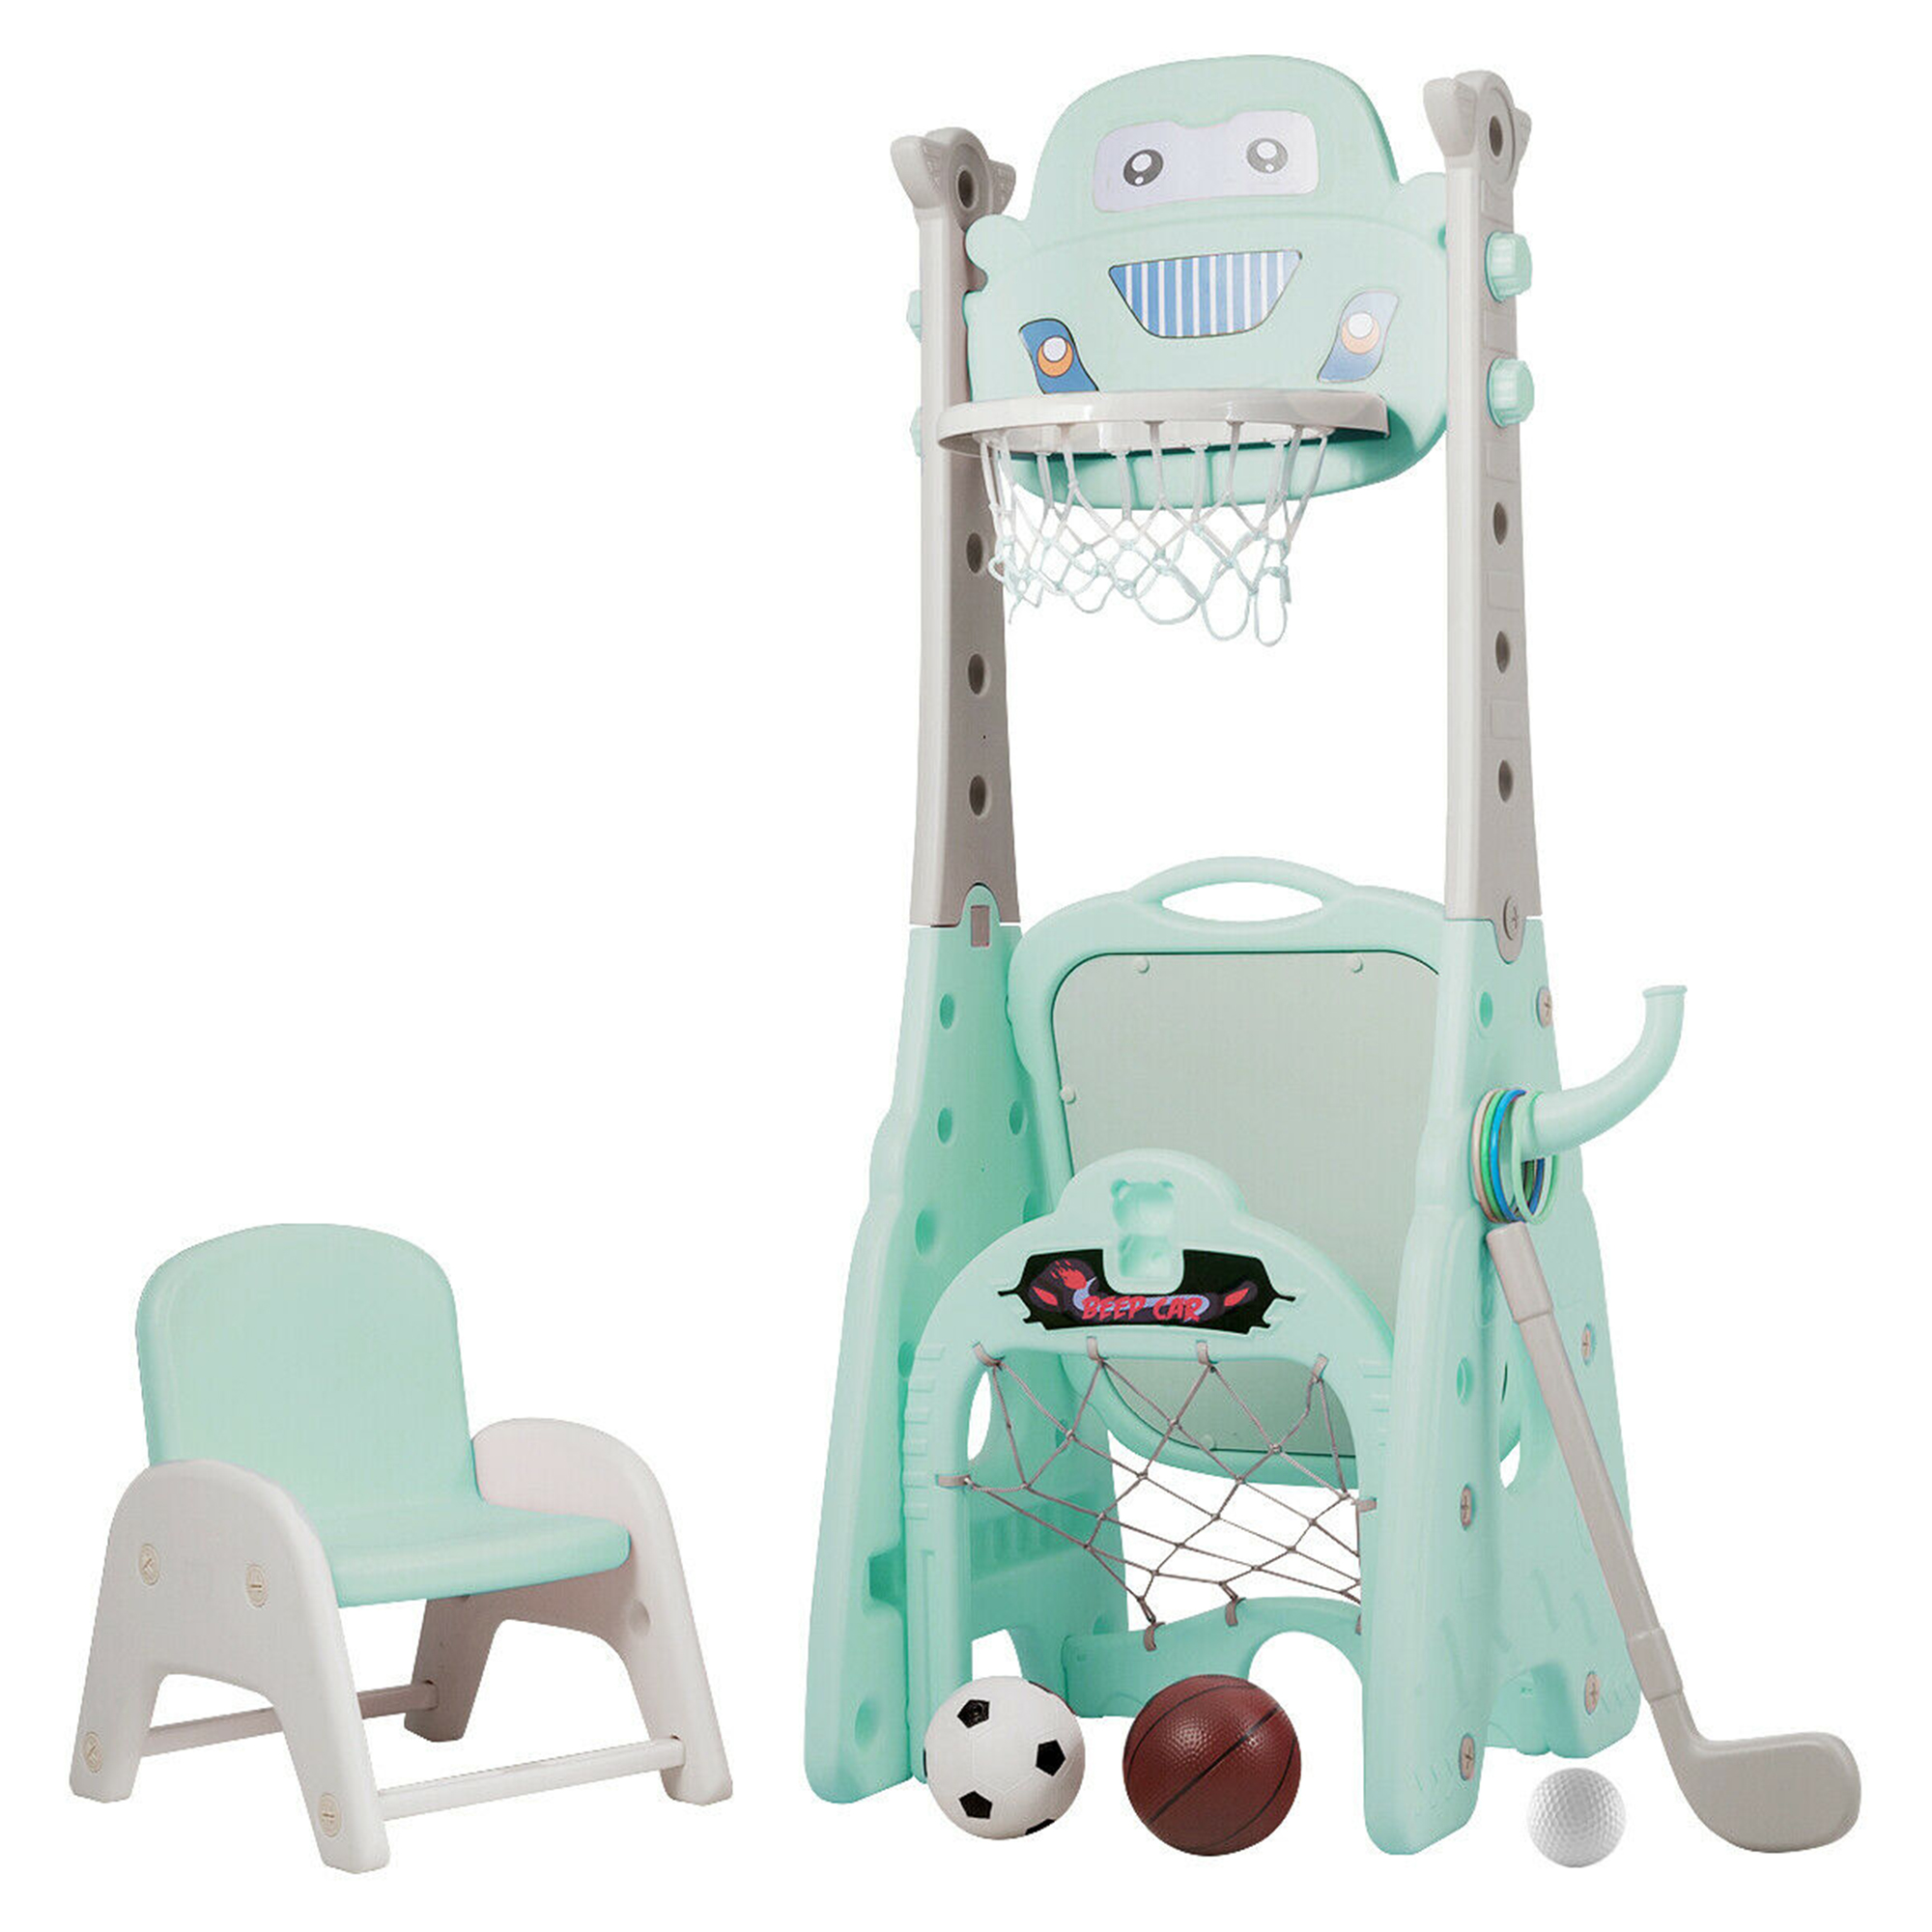 Kids Adjustable Basketball Hoop 5 in 1 Sports Activity Center for Indoor Outdoor